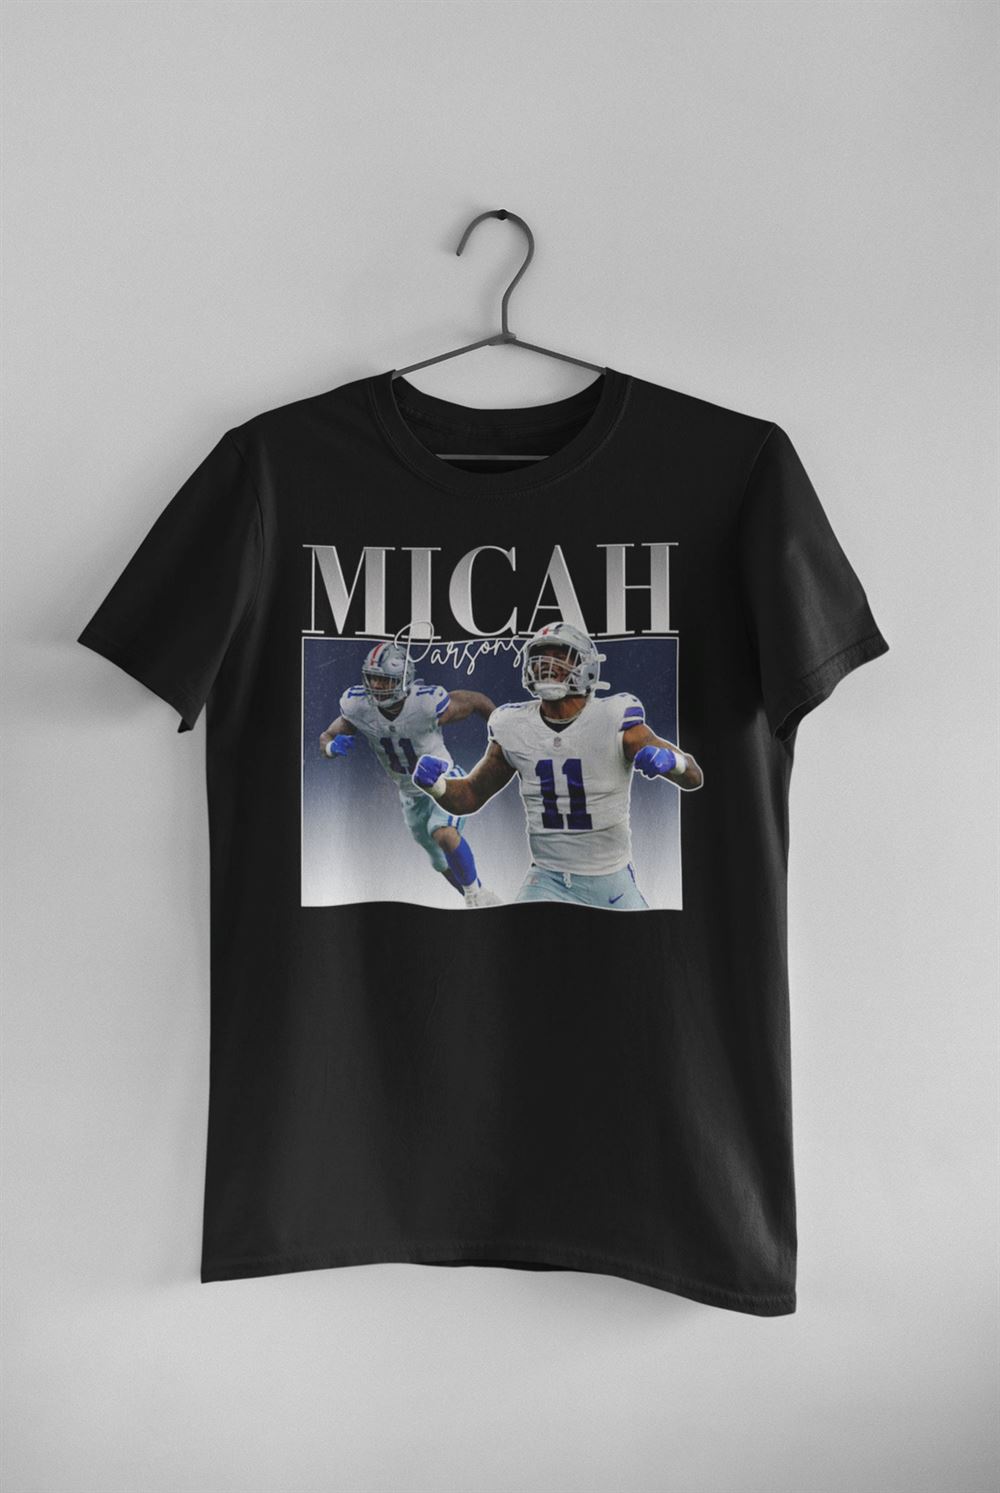 Micah Parsons Nfl Player Dallas Cowboys 90s Vintage T-shirt Gift For Men Women